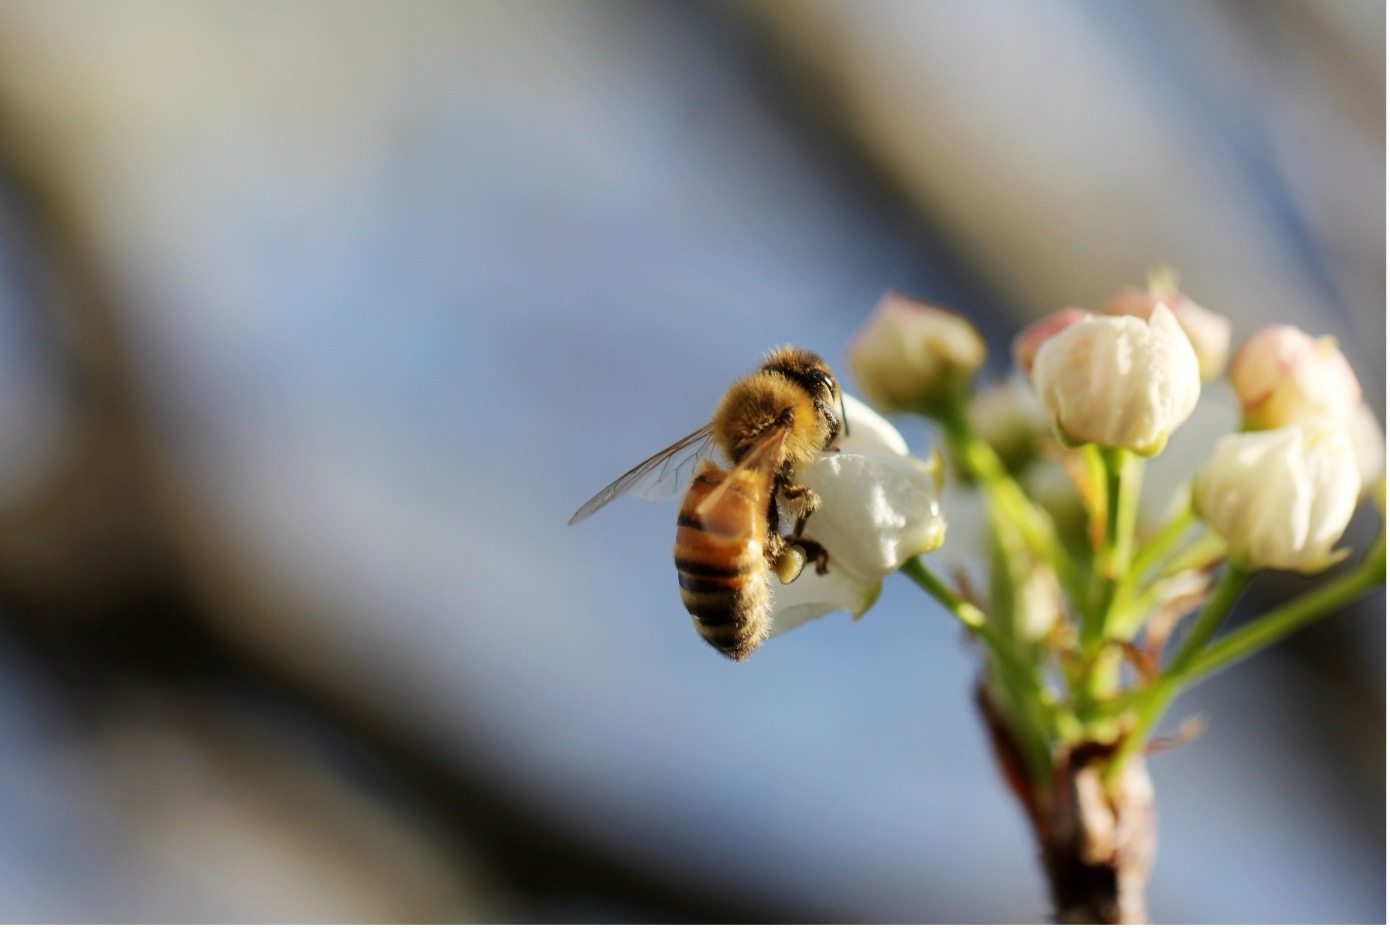 Eine Biene sitzt auf einer weißen Blume. Das Bild stellt eine Nahaufnahme dar.